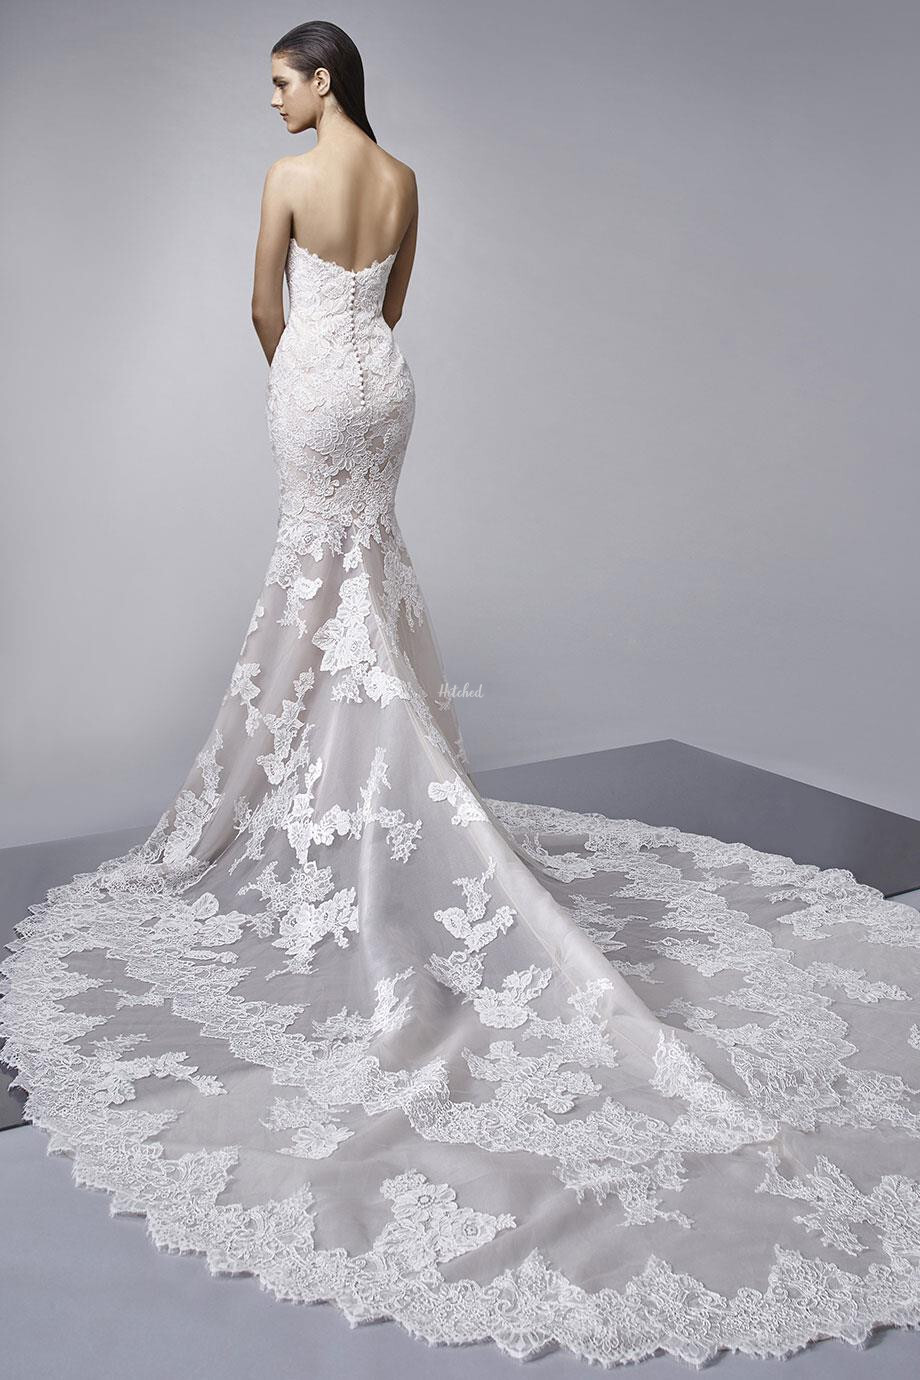 Melanie Wedding Dress from Enzoani - hitched.co.uk